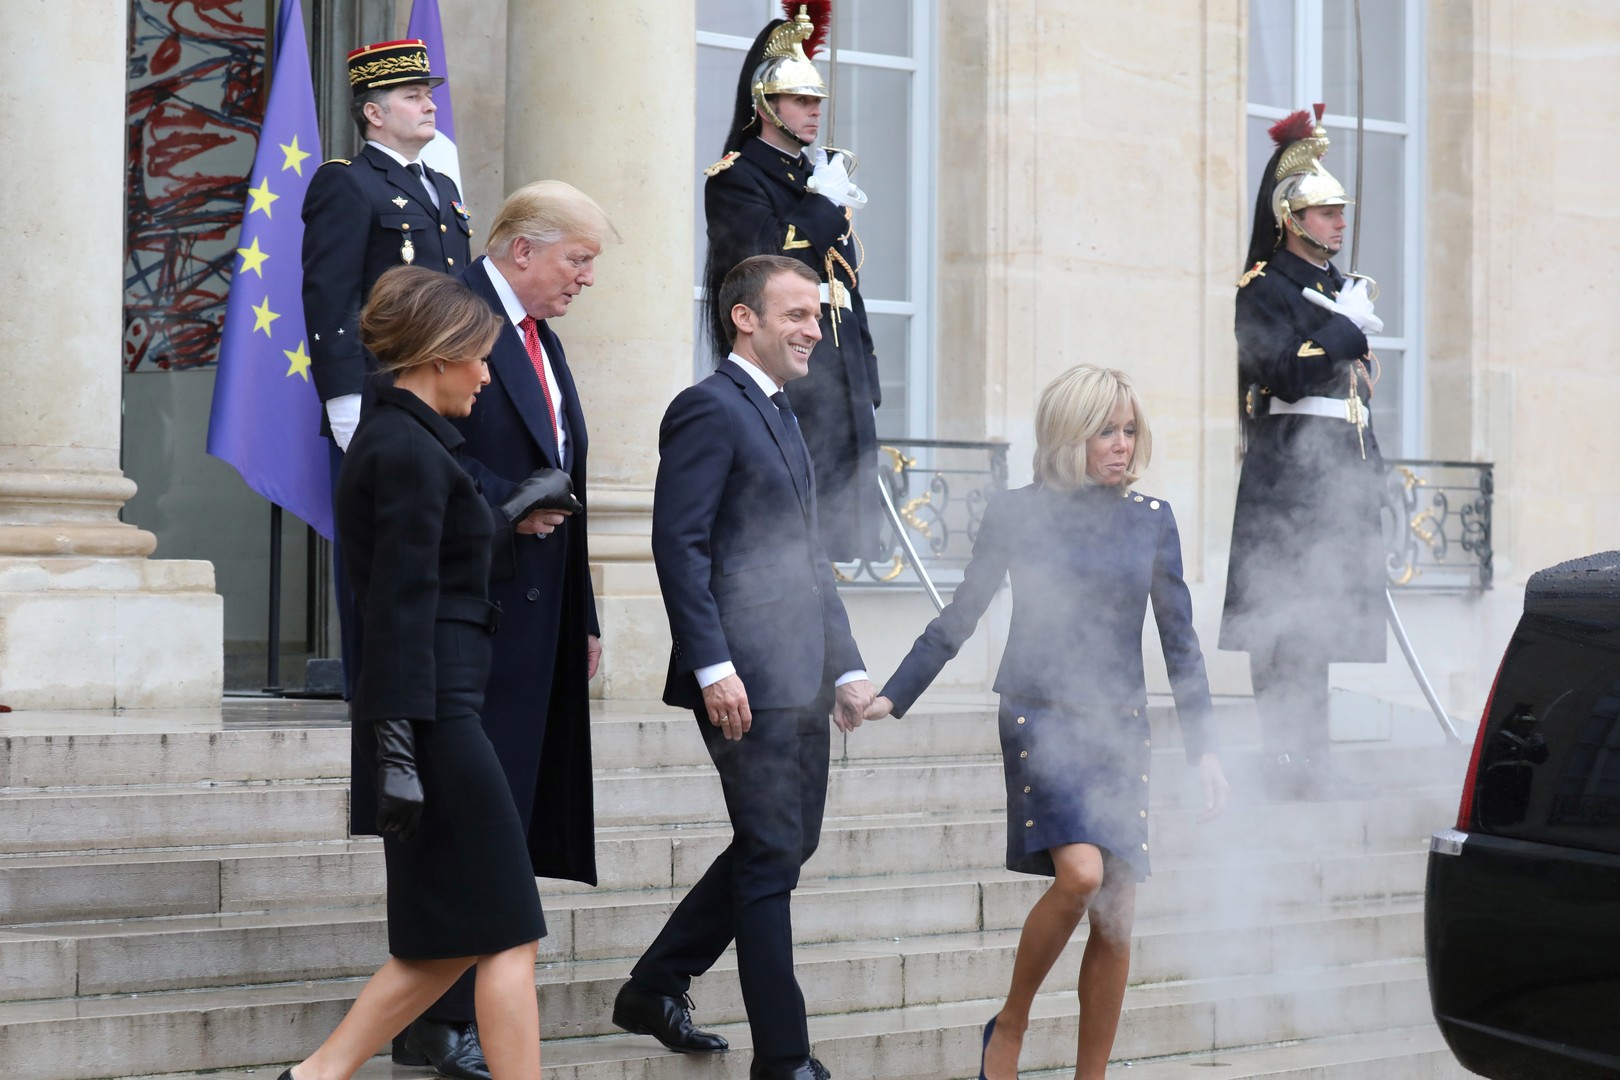 Vous avez dit écologie ? A l'Elysée, la limousine de Trump enfume les Macron (PHOTOS)